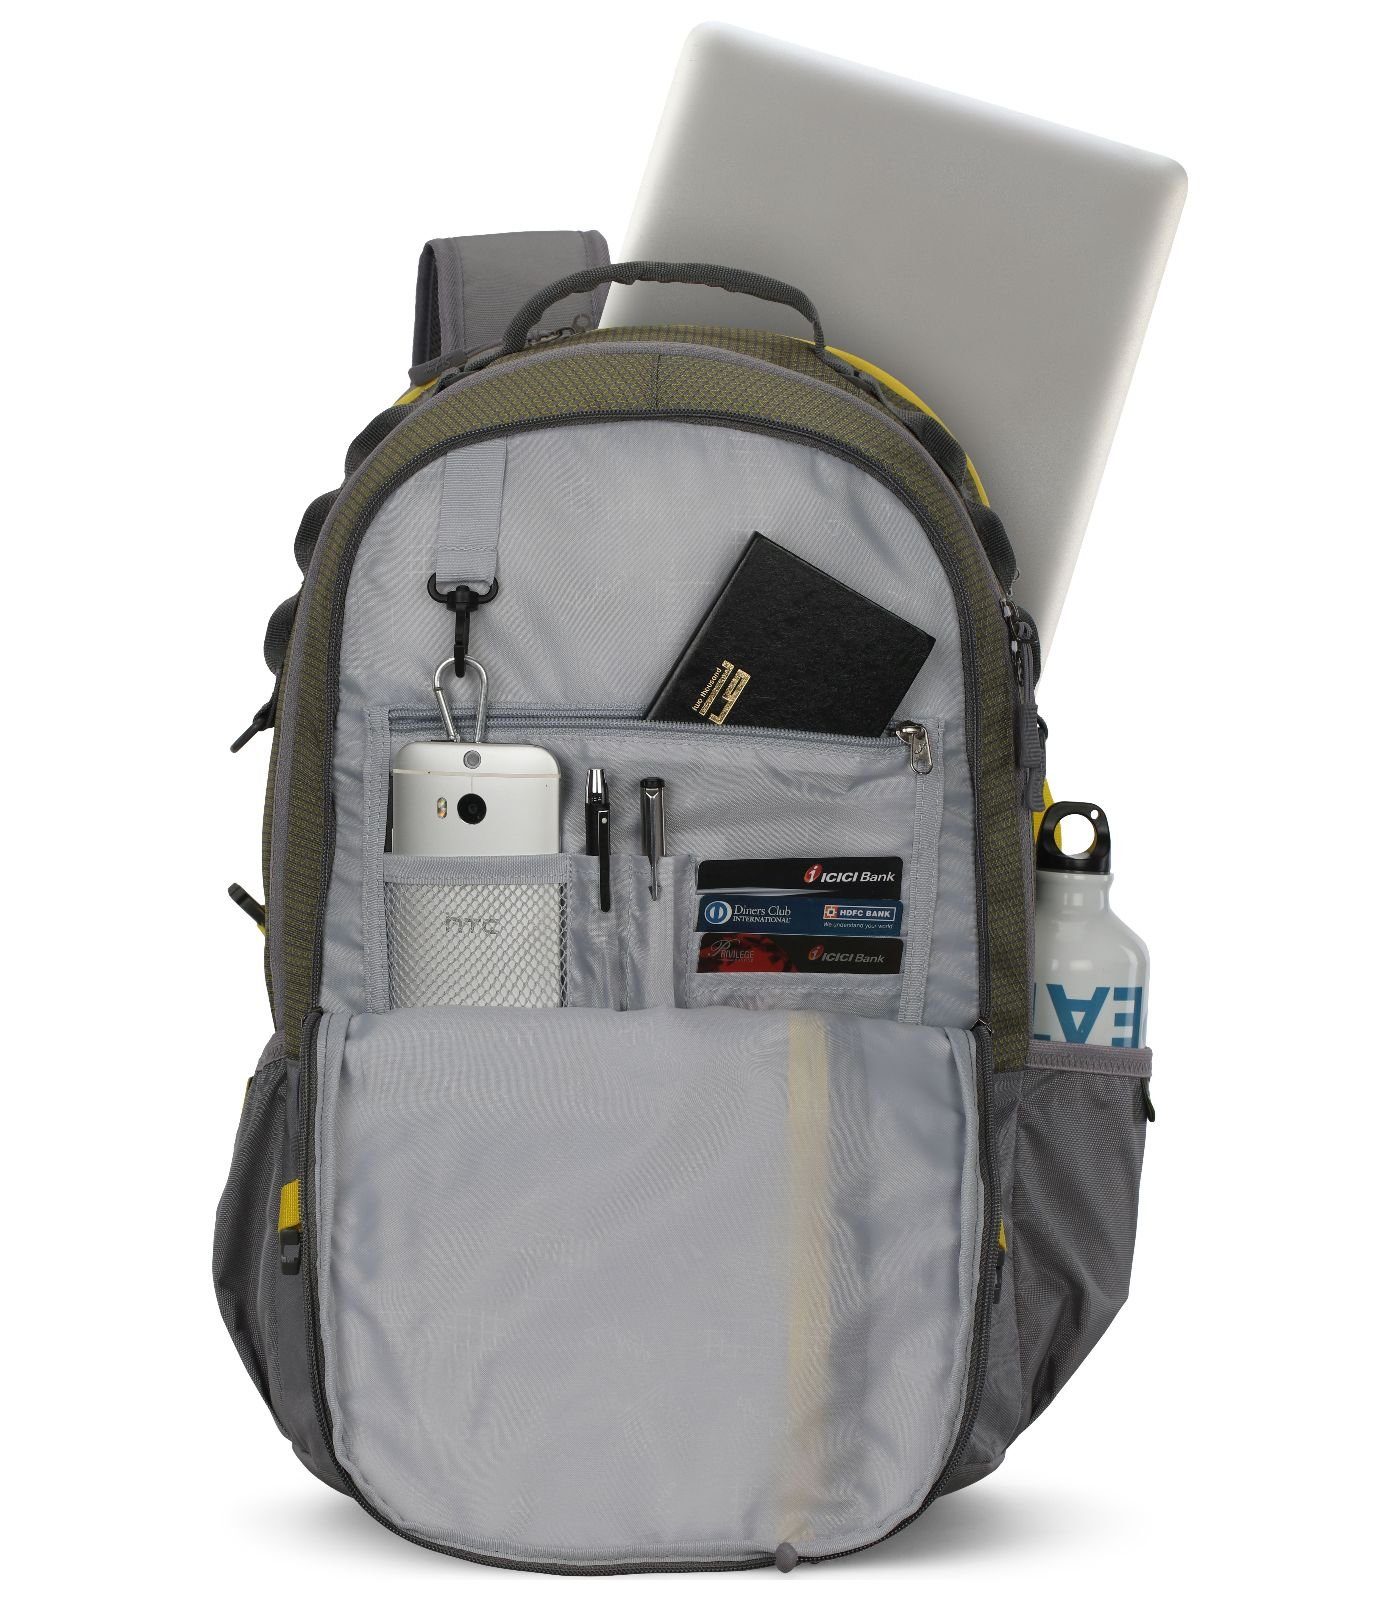 Textil Rucksack Taschen Skybags